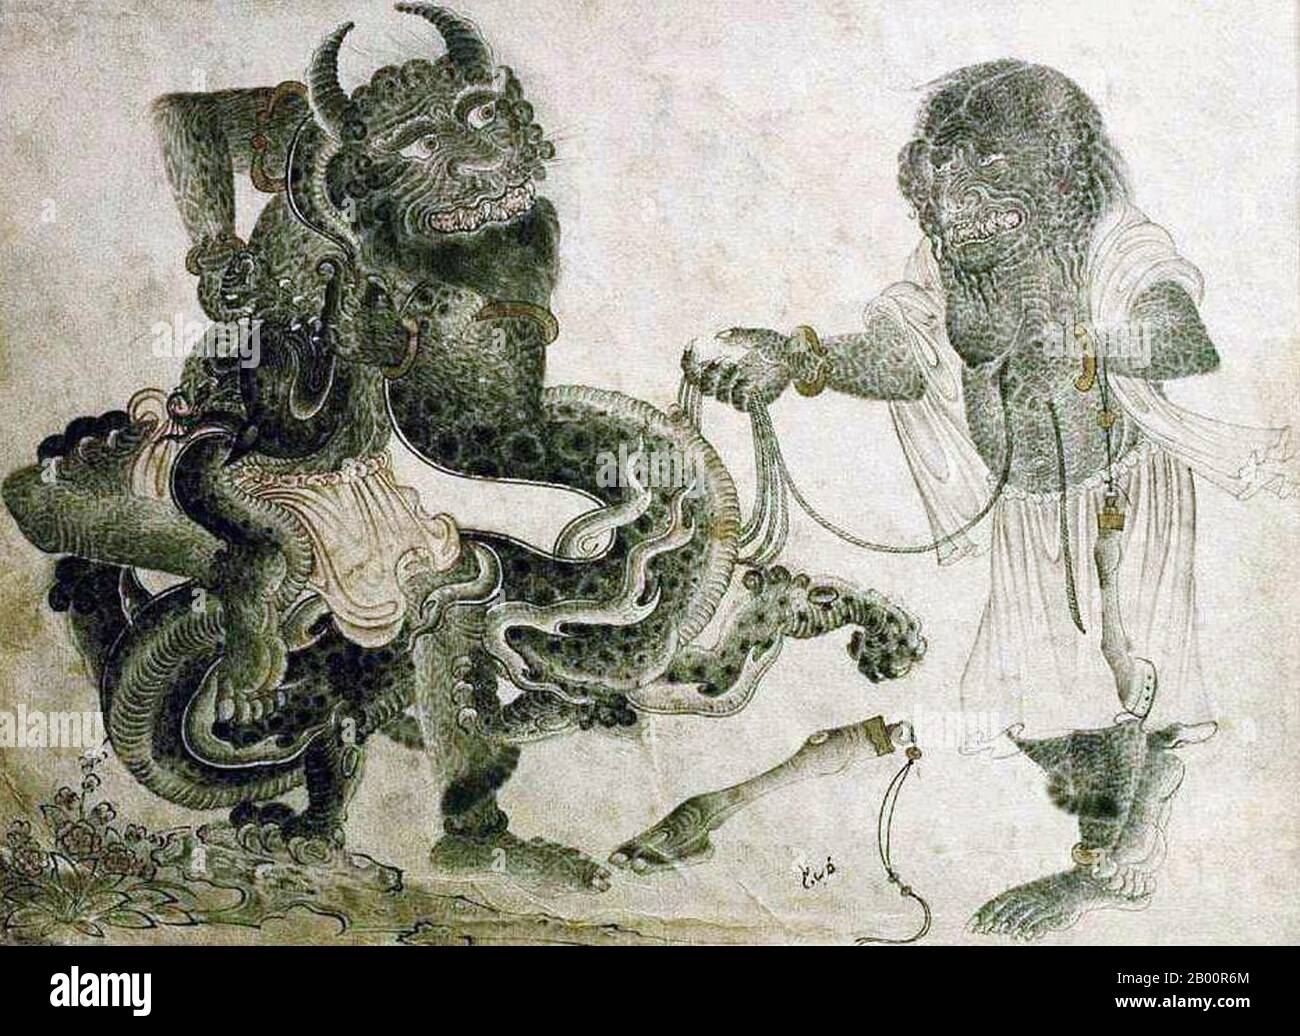 Zentralasien: Siyah Kalem Schule, 15. Jahrhundert: Zwei Dämonen mit einem Drachen. Siyah Kalem oder "Black Pen" ist der Name der Malschule des 15. Jahrhunderts, die Mehmed Siyah Kalem zugeschrieben wird. Von seinem Leben ist nichts bekannt, aber seine Arbeit deutet darauf hin, dass er zentralasiatischer turkischer Herkunft war und mit dem Lager- und Militärleben bestens vertraut war. Die Bilder erscheinen in den 'Conqueror’s Albums', so benannt, weil zwei Porträts von Sultan Mehmed II. Dem Eroberer in einem von ihnen vorhanden sind. Die Alben bestehen aus Miniaturen aus Handschriften des 14., 15. Und frühen 16. Jahrhunderts. Stockfoto